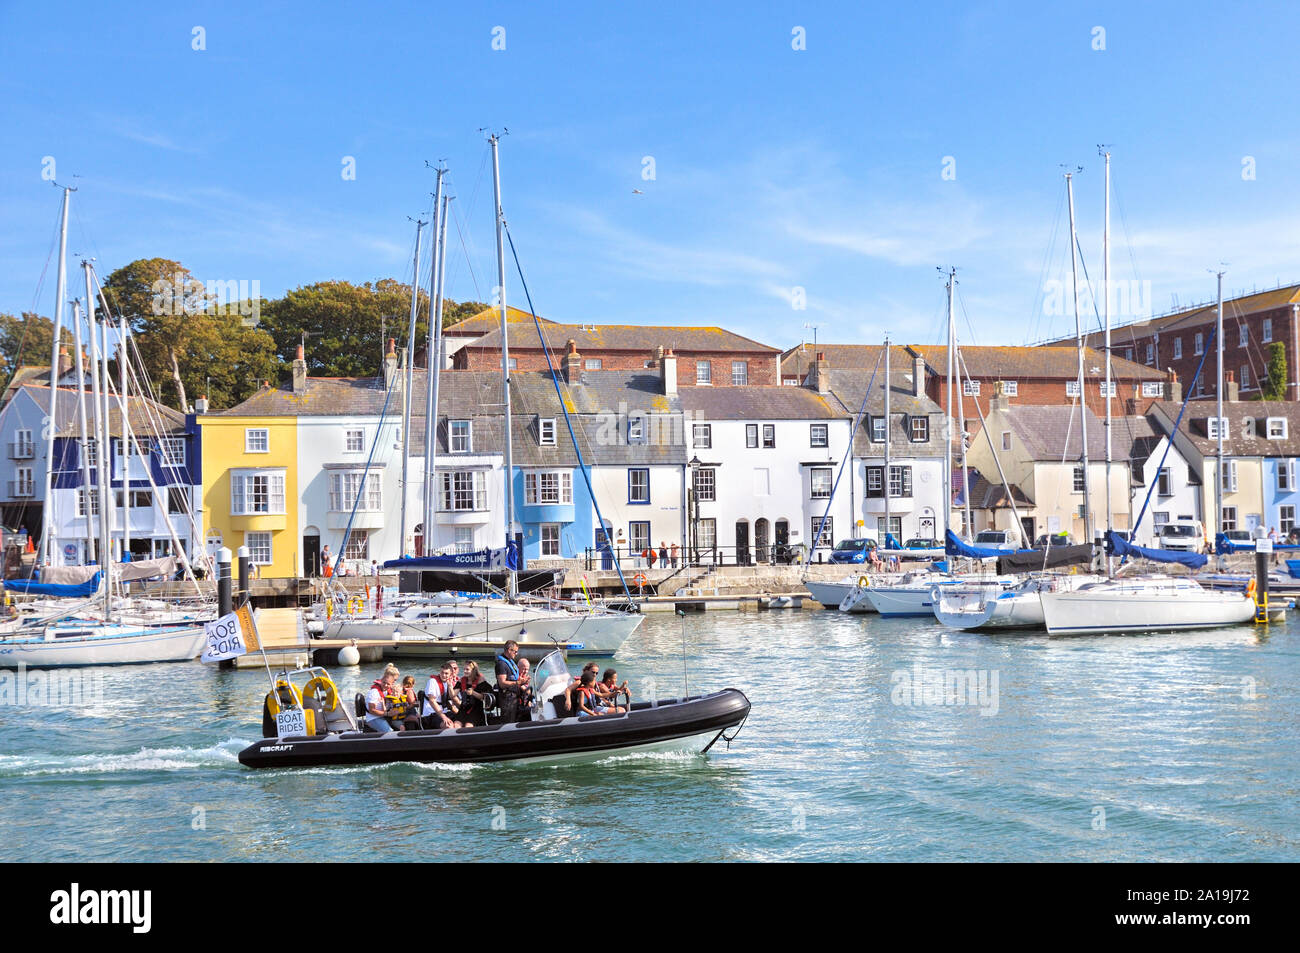 Les touristes sur une côte en bateau dans le vieux port des yachts de passage et chalets sur Parade Nothe, Weymouth, Jurassic Coast, Dorset, England, UK Banque D'Images